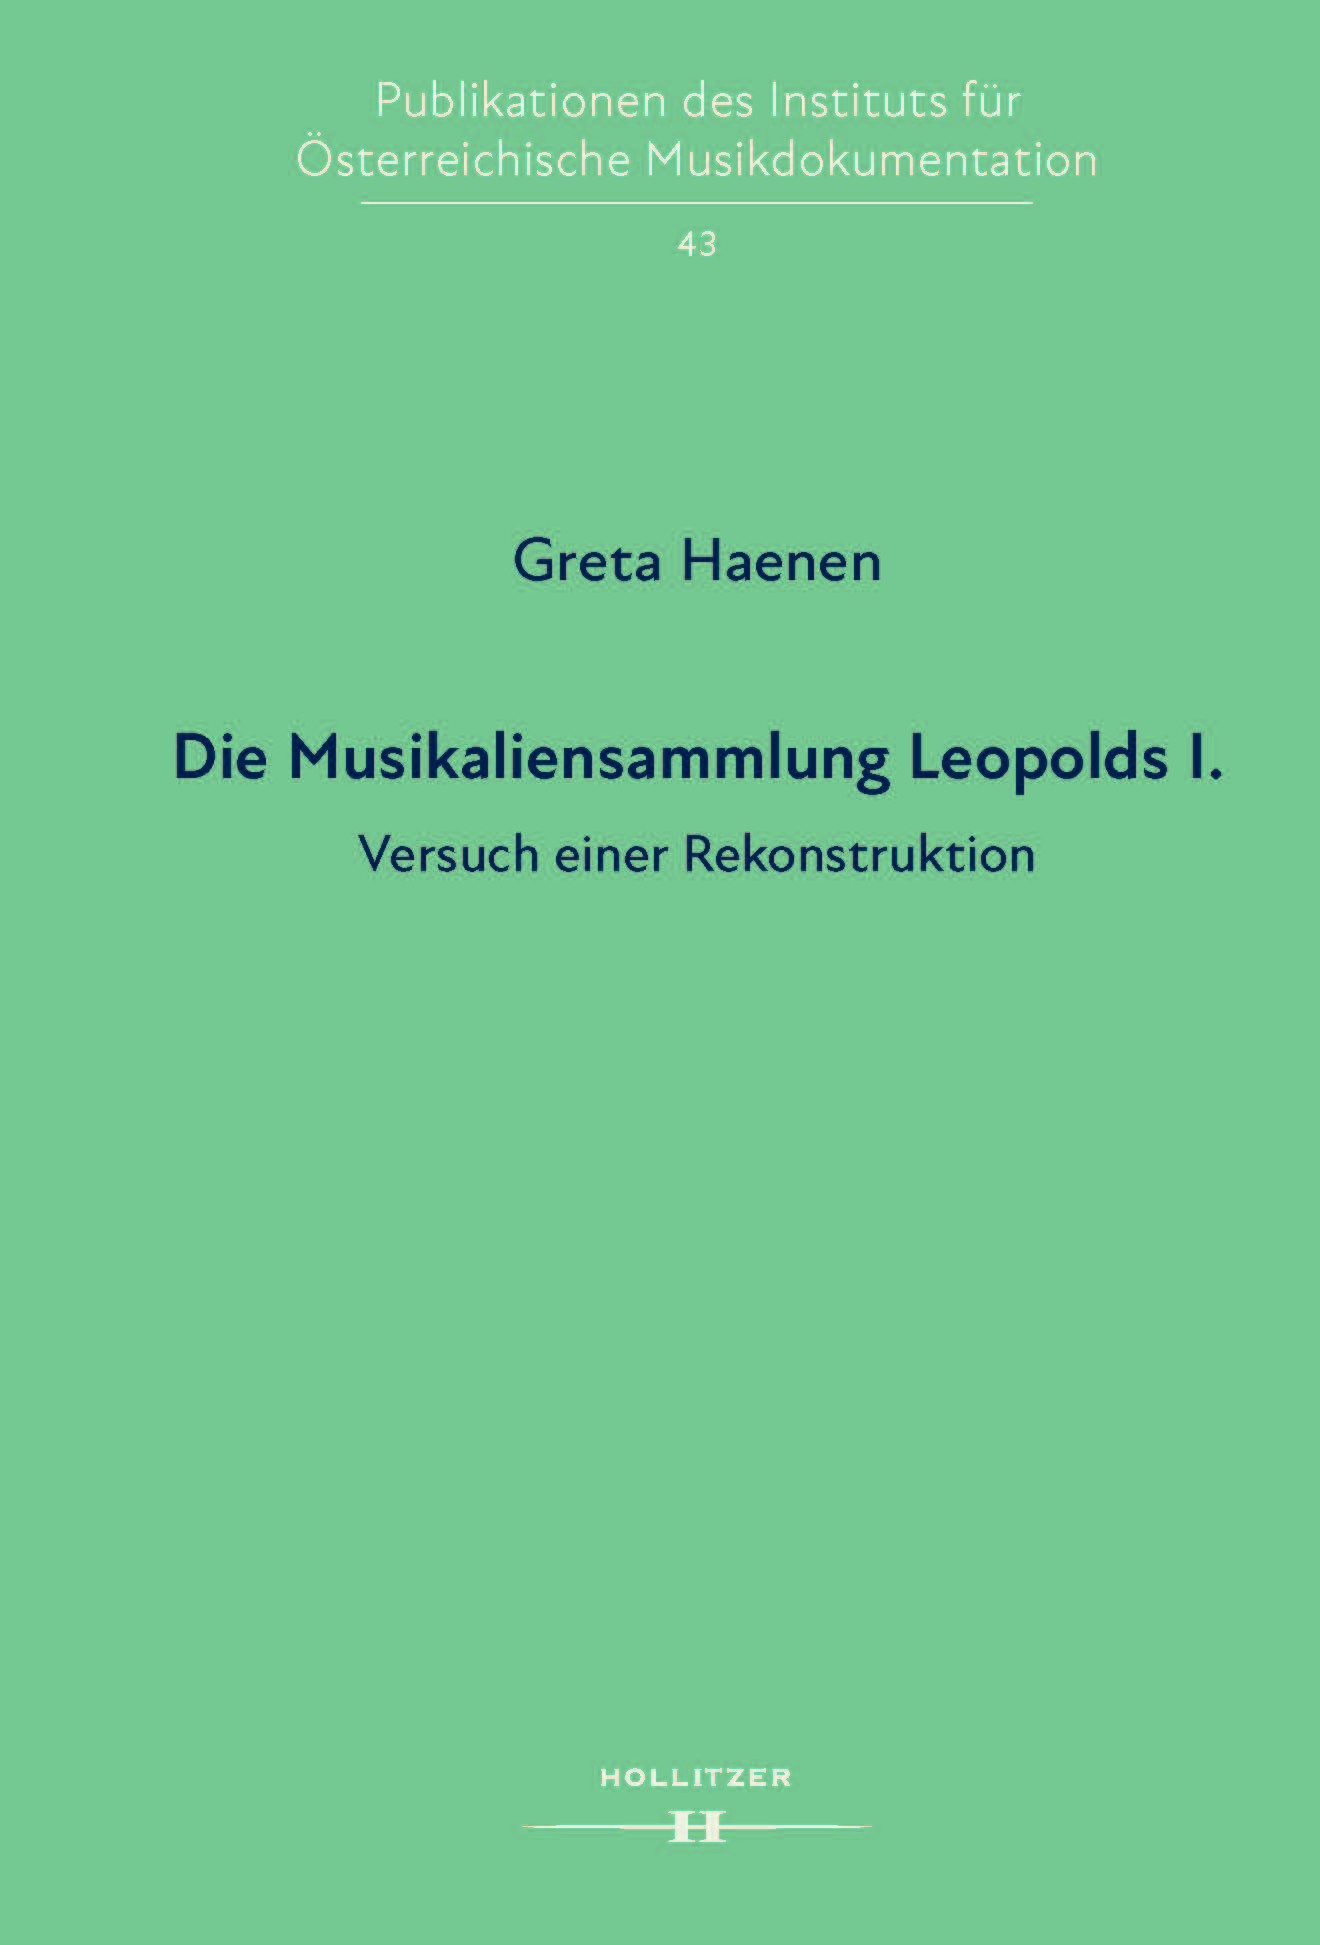 Greta Haenen: Die Musikaliensammlung Leopolds I.